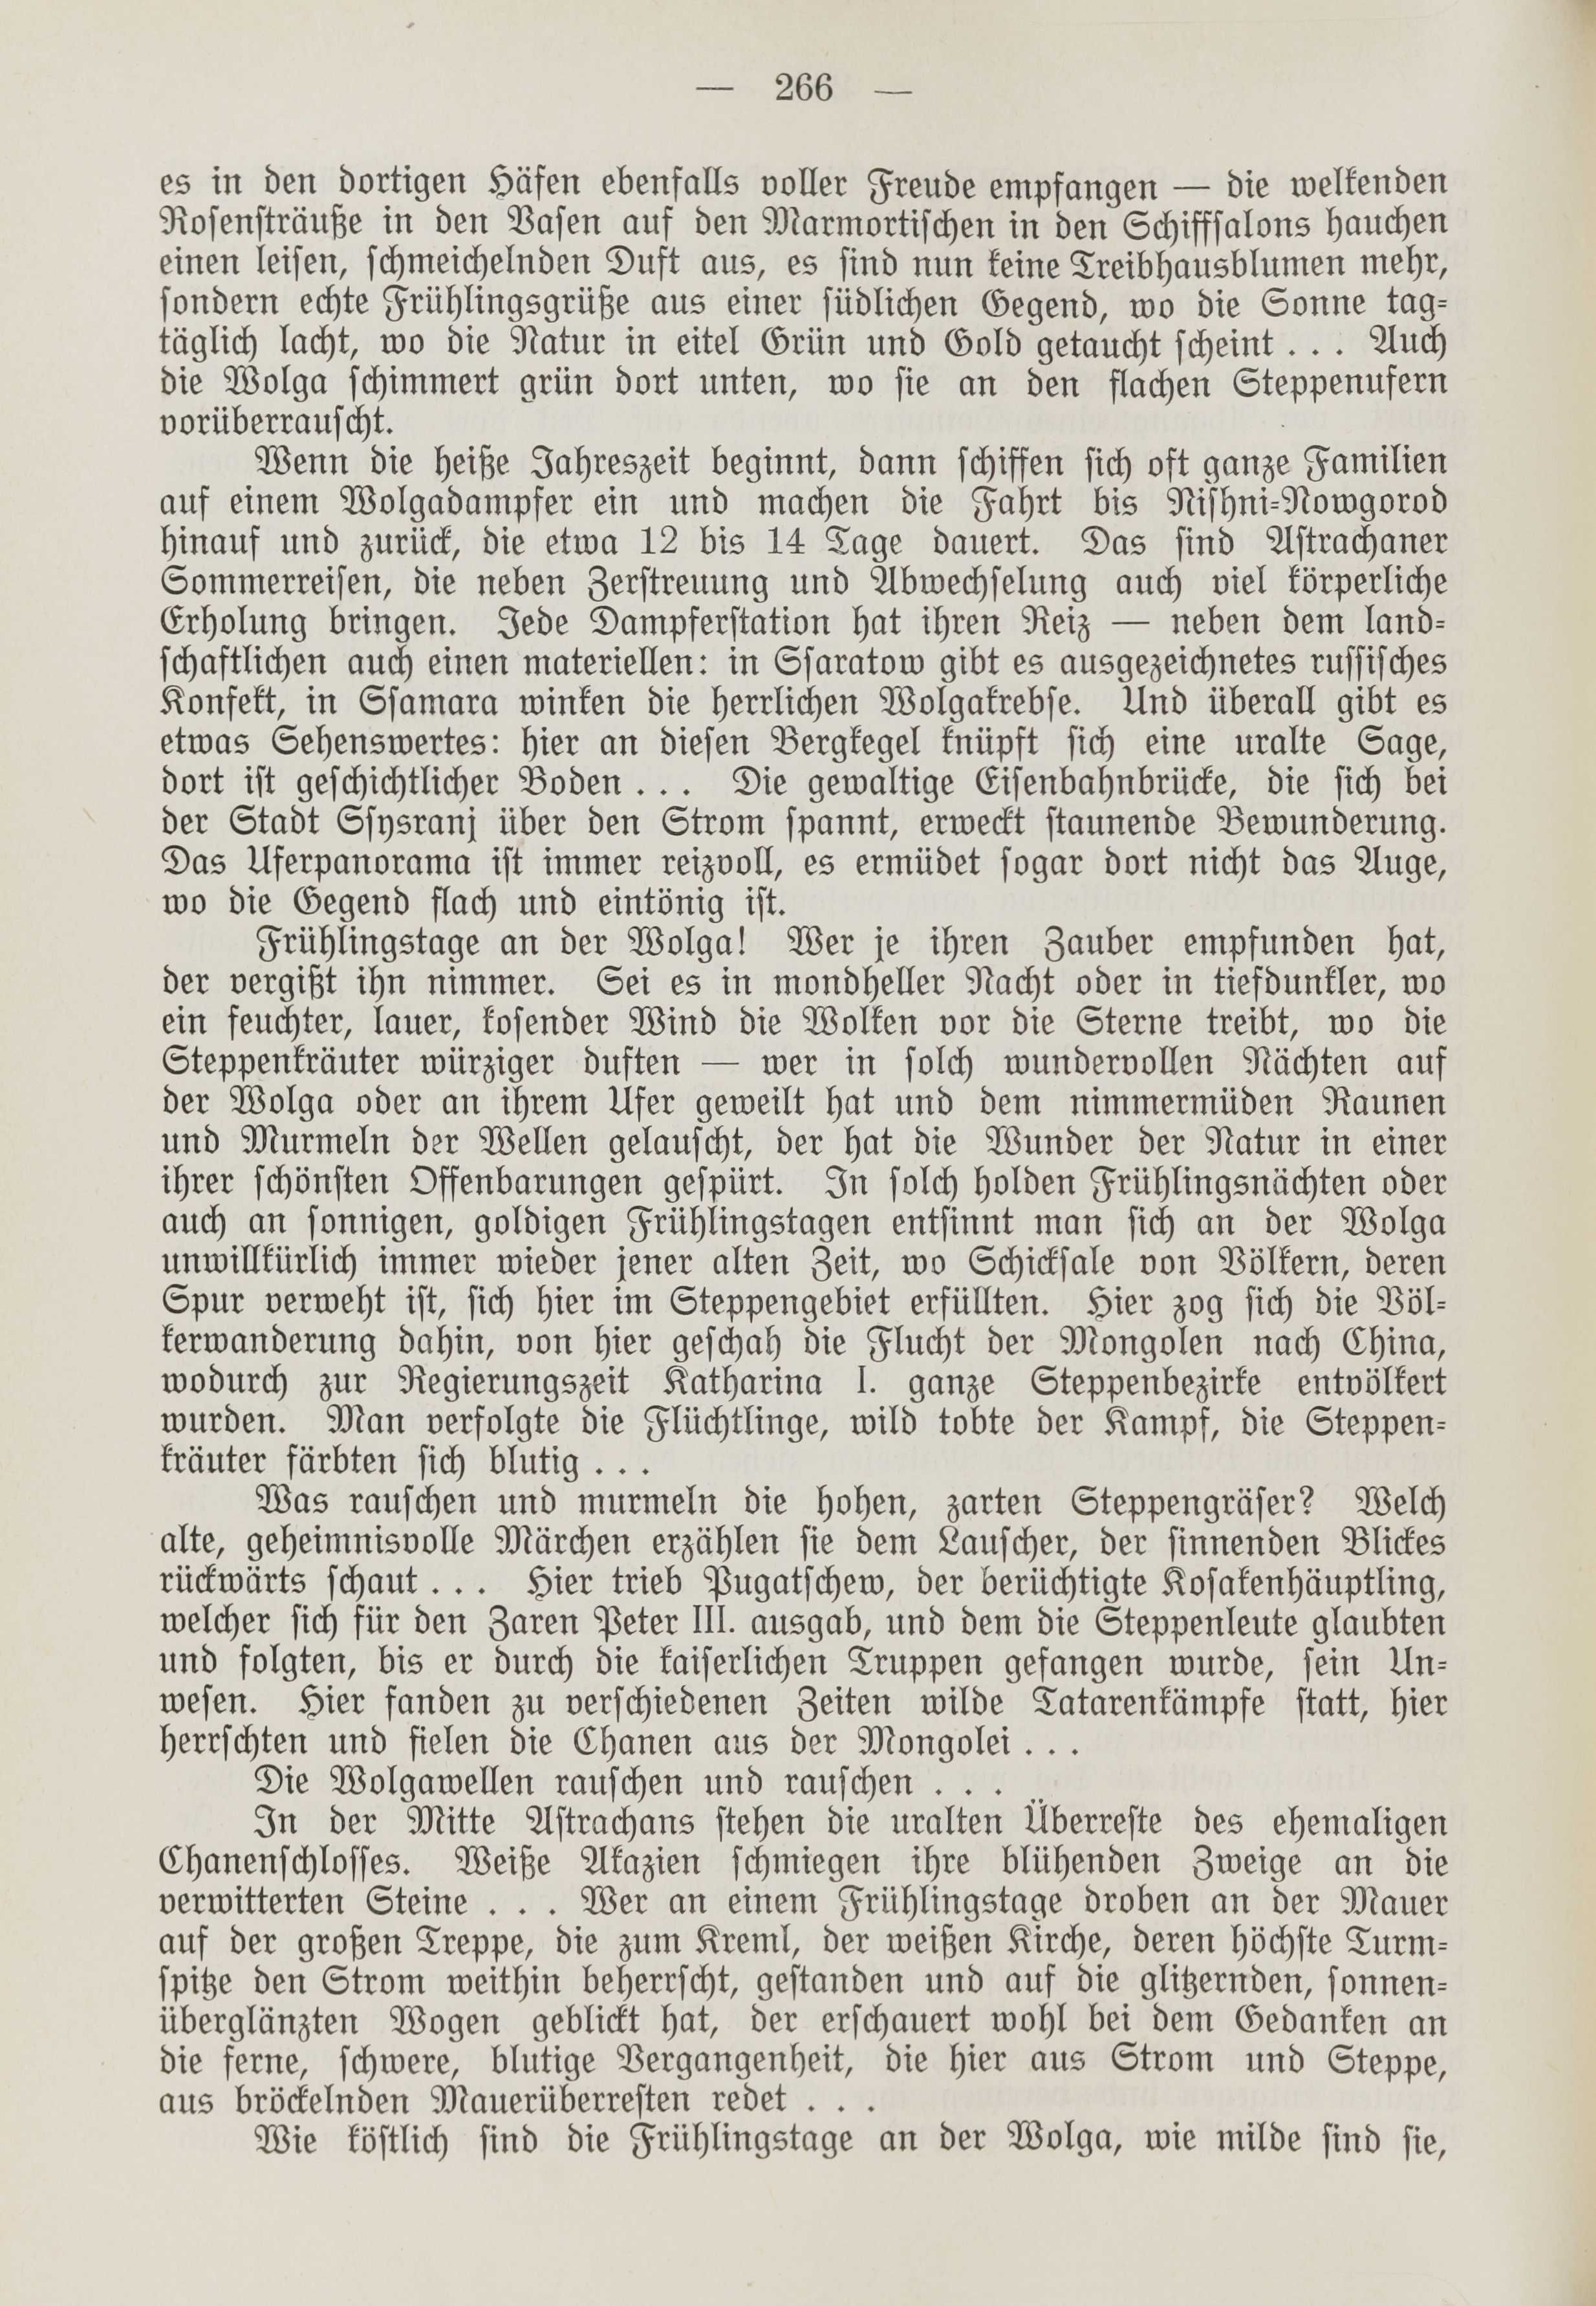 Deutsche Monatsschrift für Russland [1] (1912) | 274. (266) Main body of text